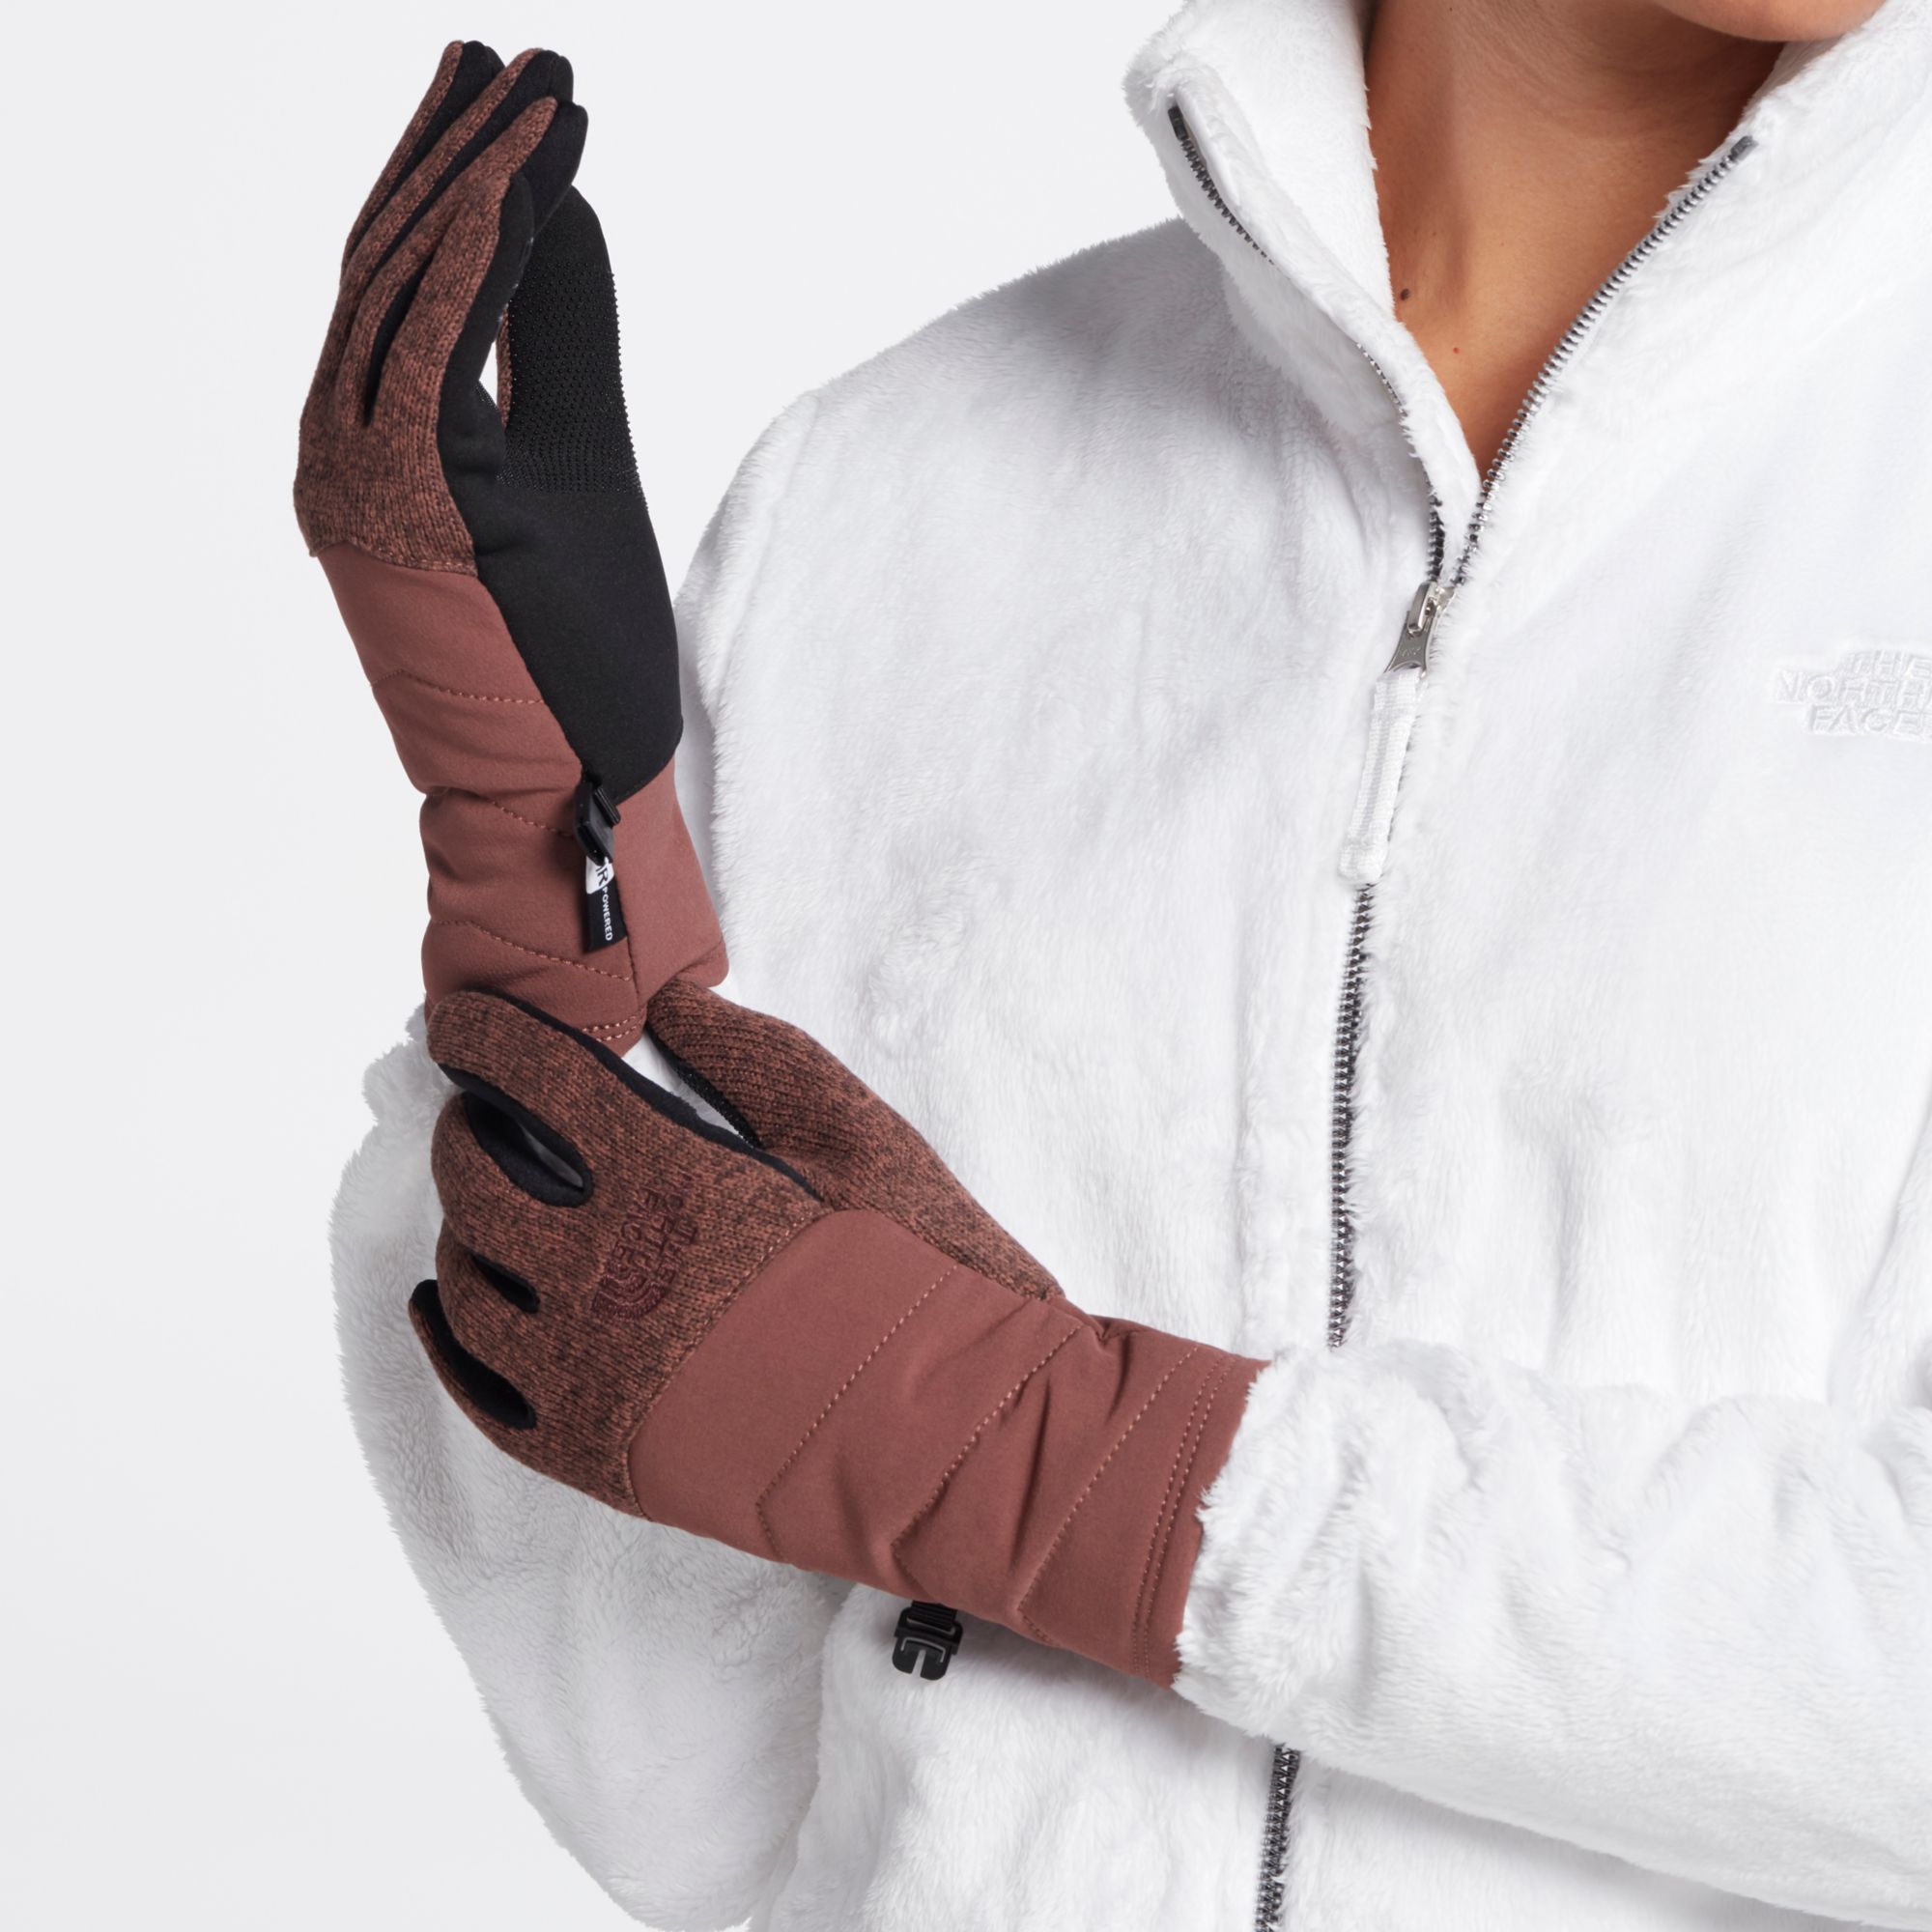 women's indi etip glove